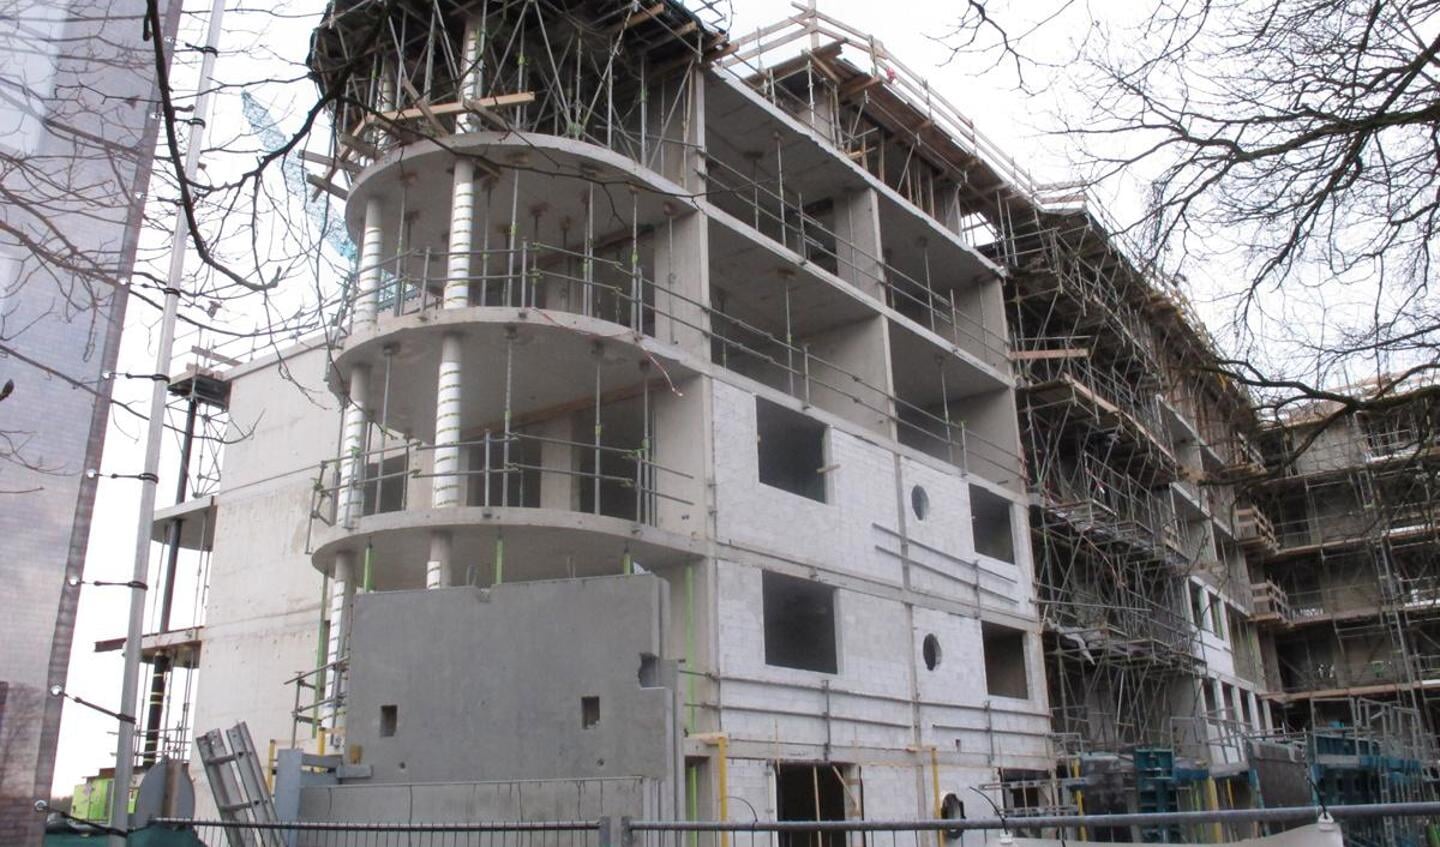 November 2012: De bouw van appartementencomplex de Marckhoek in het Ginneken vordert gestaag. foto Wijnand Nijs